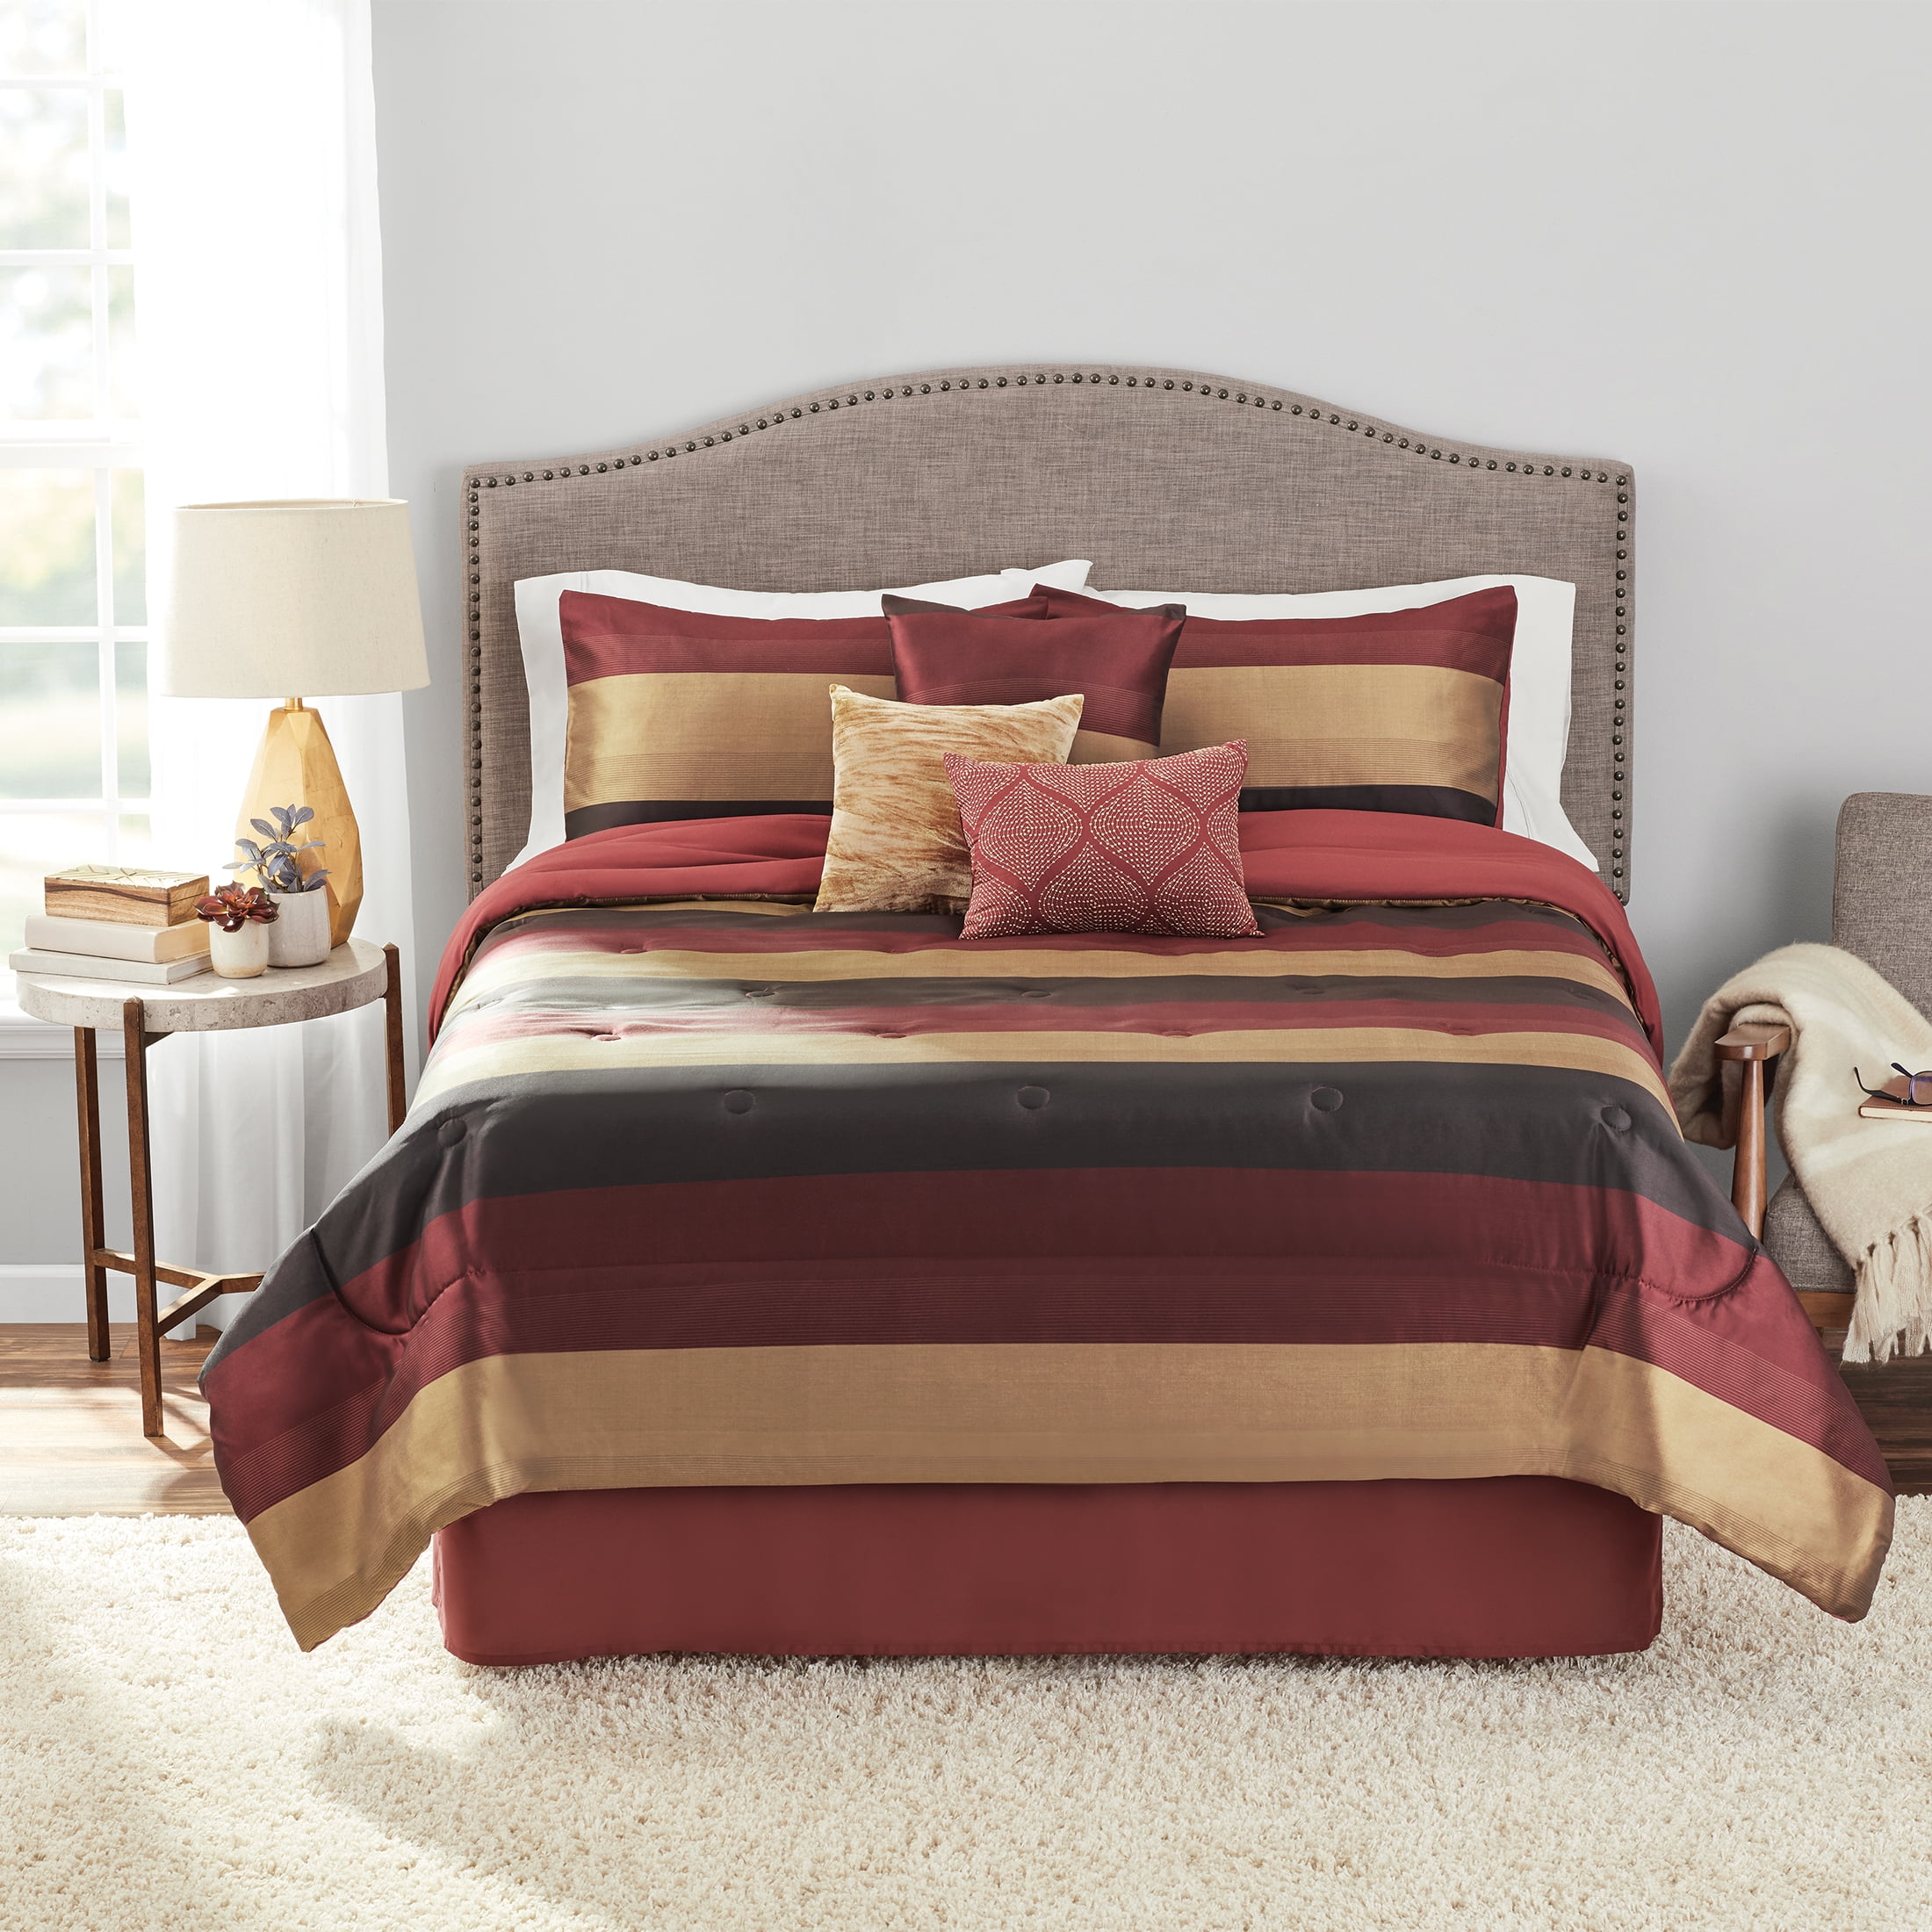 Queen Size Country Farmhouse 8-Piece Comforter Set Pillows Shams Bed Skirt Decor 